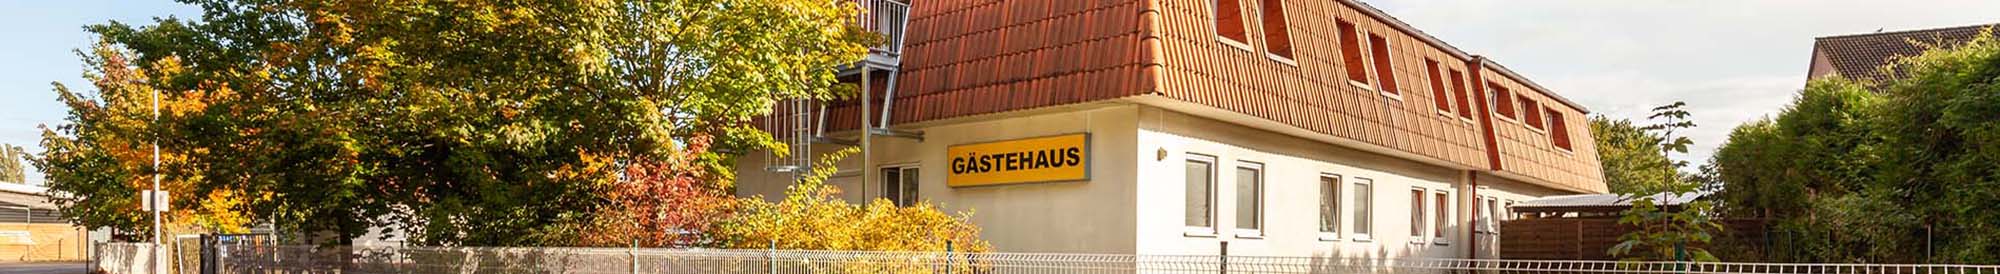 (c) Gaestehaus-garbsen.de